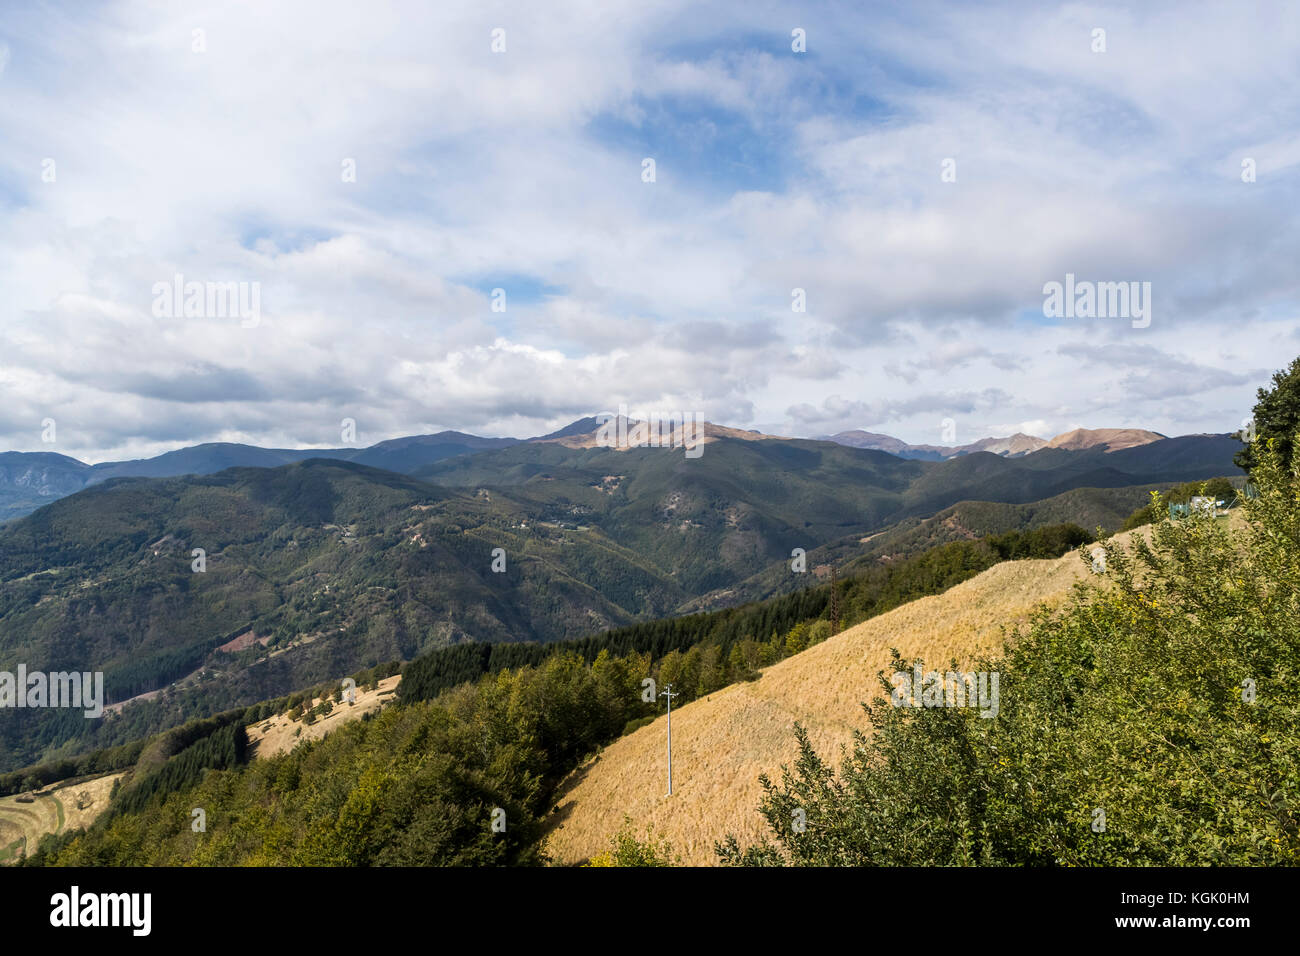 Il villaggio sulla collina di San Pellegrino in Alpe in provincia di Lucca, Italia Foto Stock